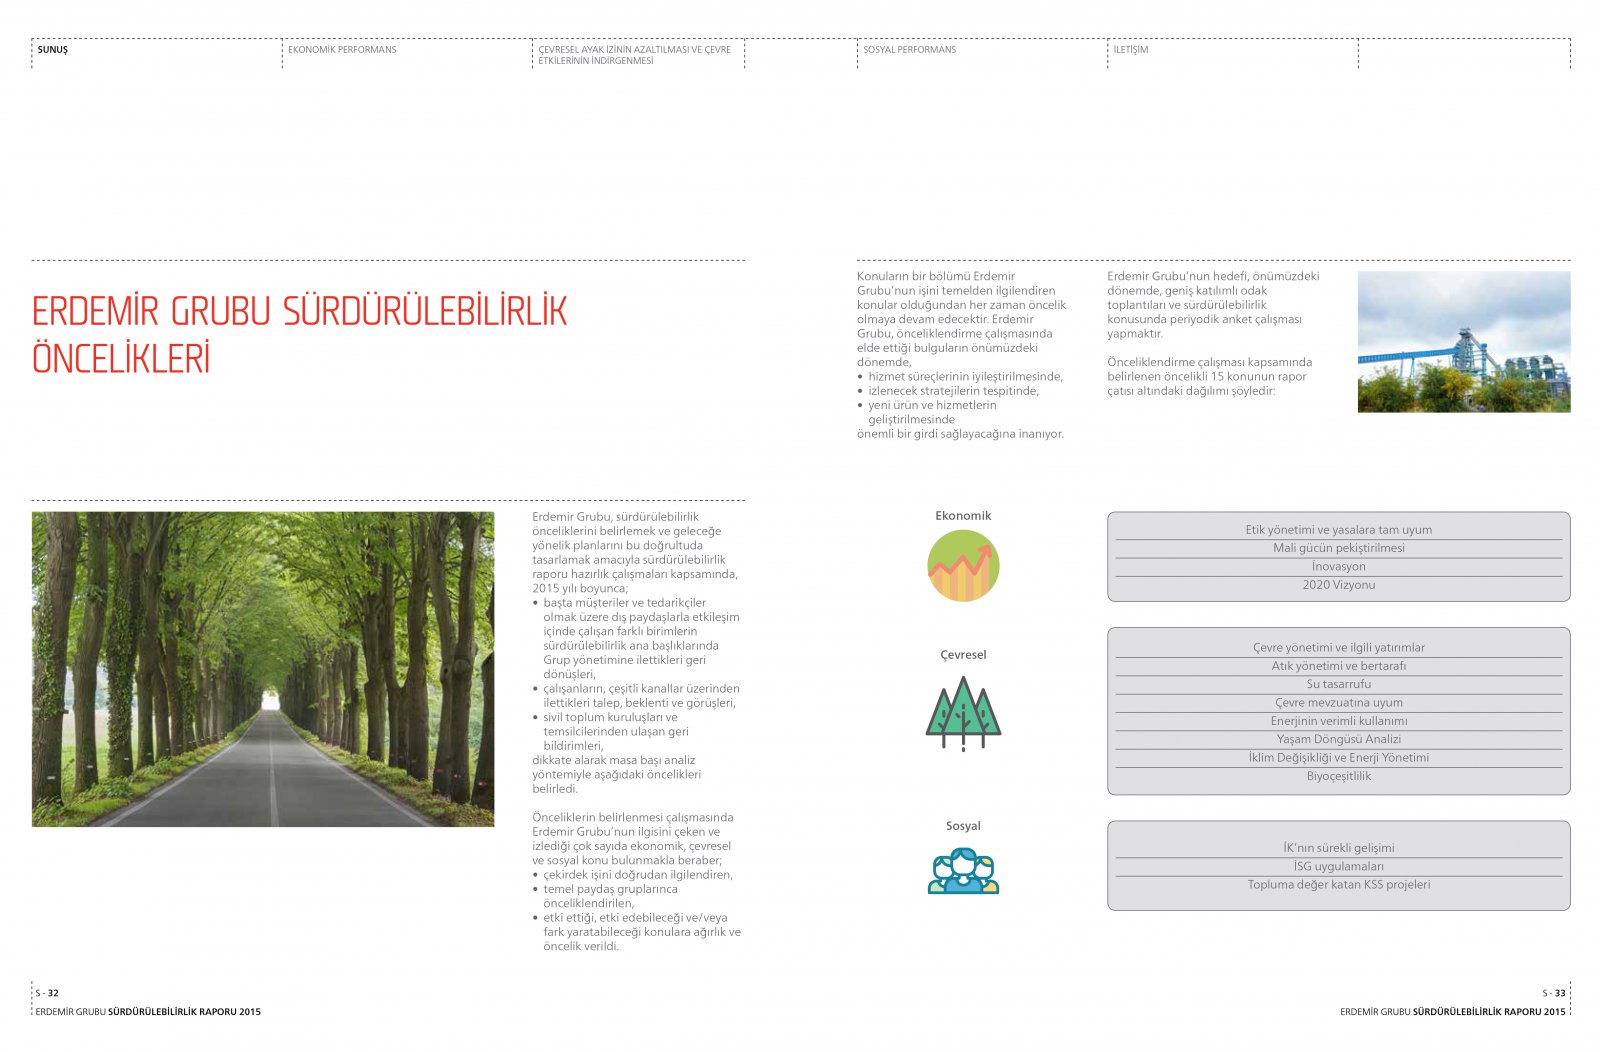 ERDEMİR GRUBU / 2015 Sürdürülebilirlik Raporu / 2015 Sustainability Report